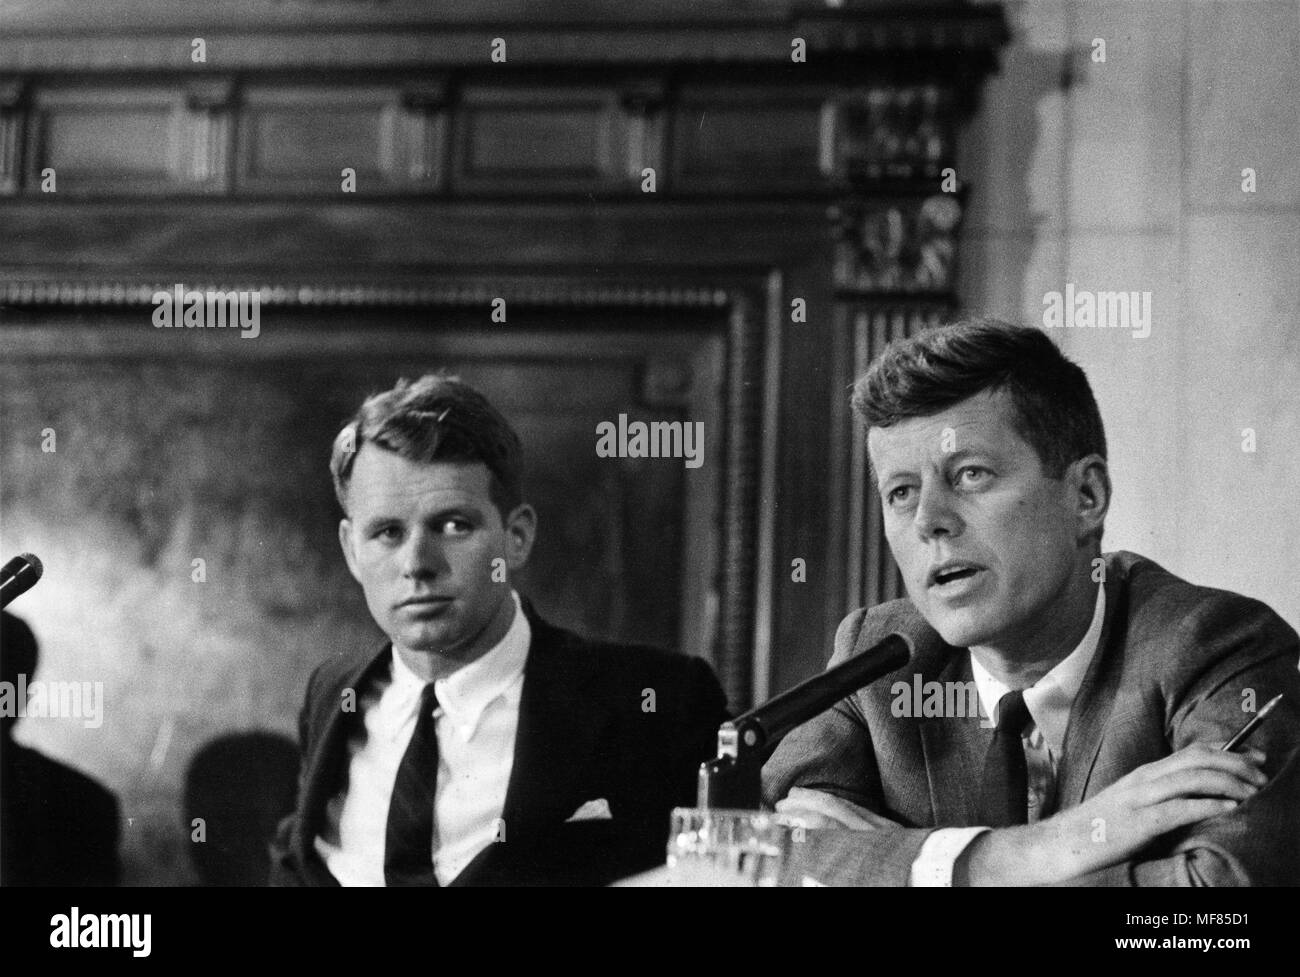 PX 65-105: 470 5/1957 Robert F. Kennedy und John F. Kennedy während der McClellan Senat Anhörungen. Foto: Douglas Jones für die Zeitschrift in der John-F.-Kennedy Presidential Library und Museum, Boston. Stockfoto